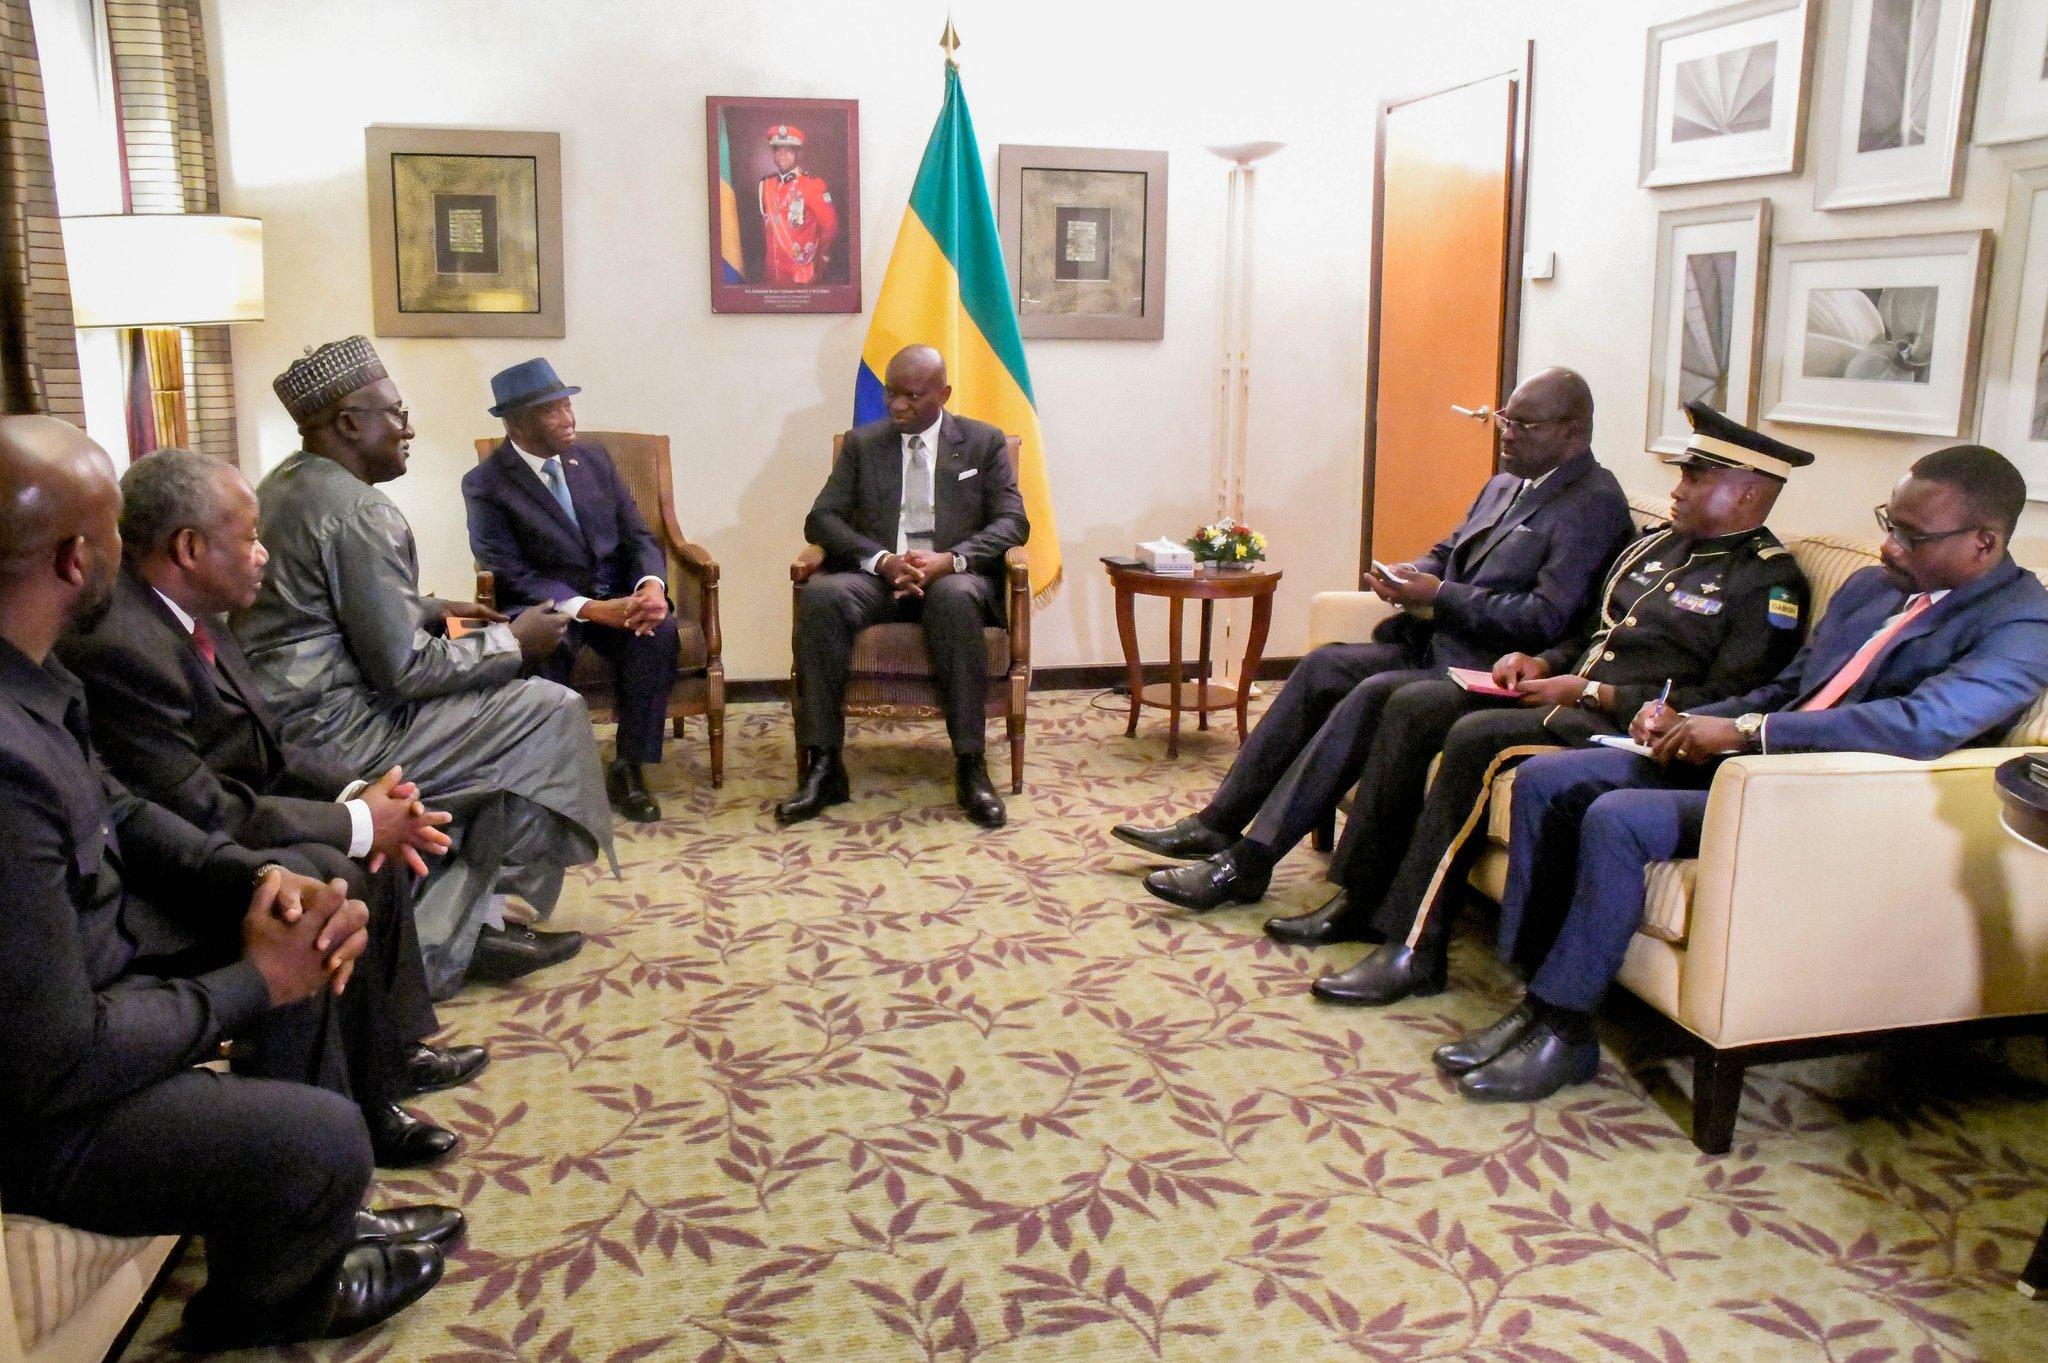 La Transition au Gabon poursuit l’élargissement des champs de coopération de Libreville avec divers partenaires